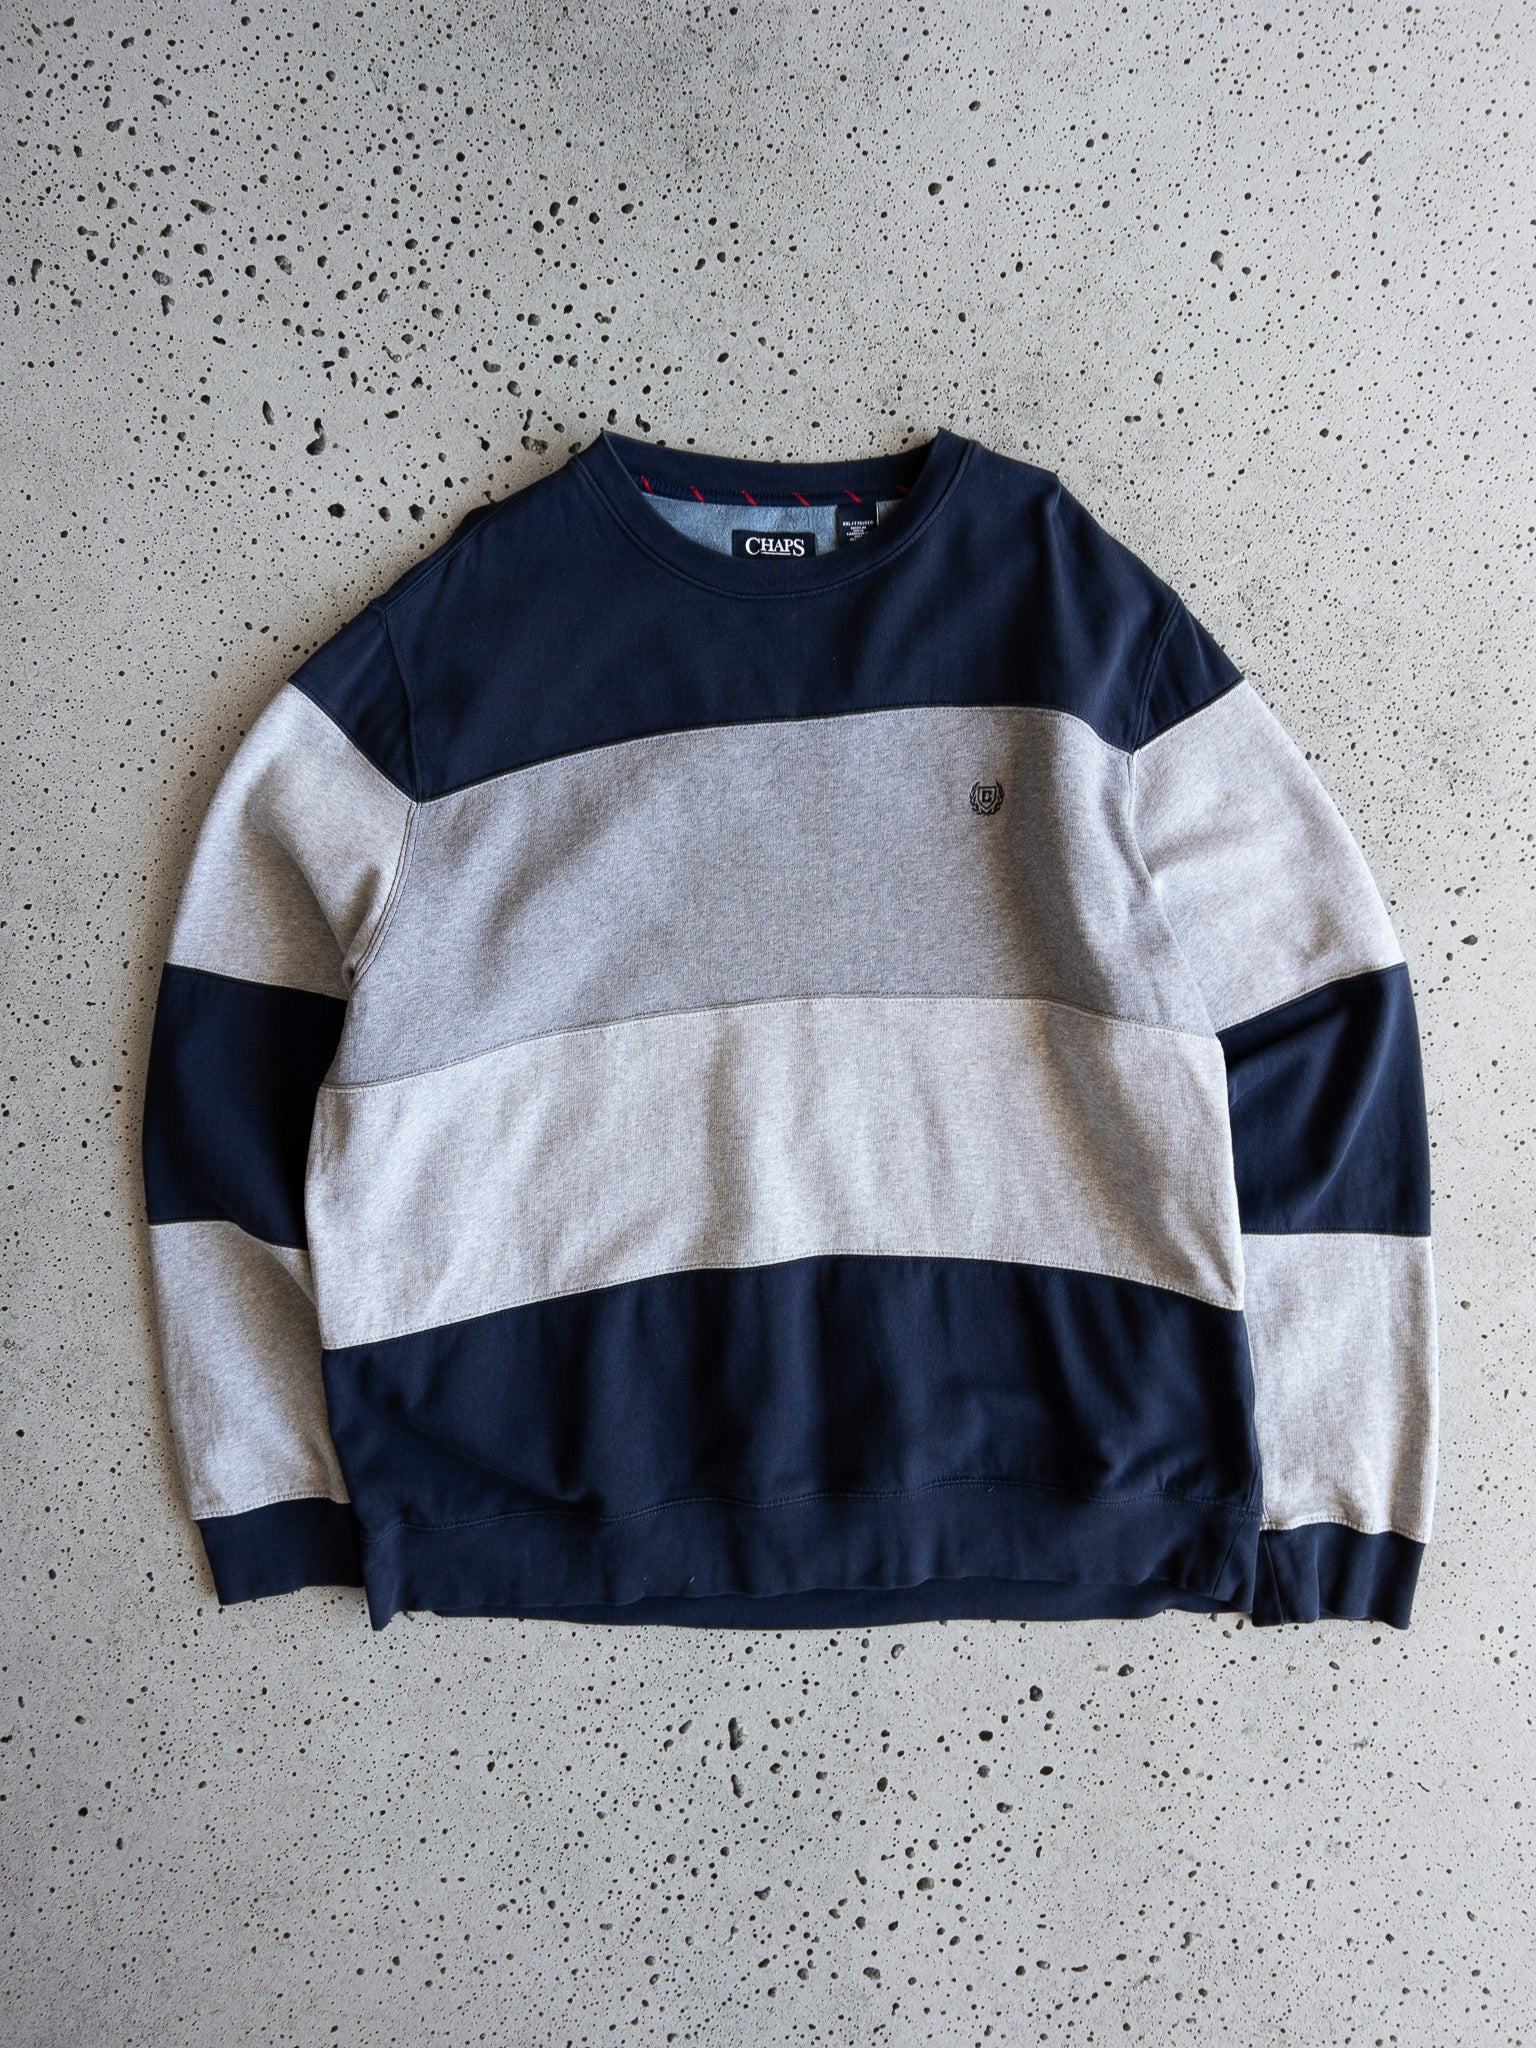 Vintage Chaps Ralph Lauren Sweatshirt (XXL)